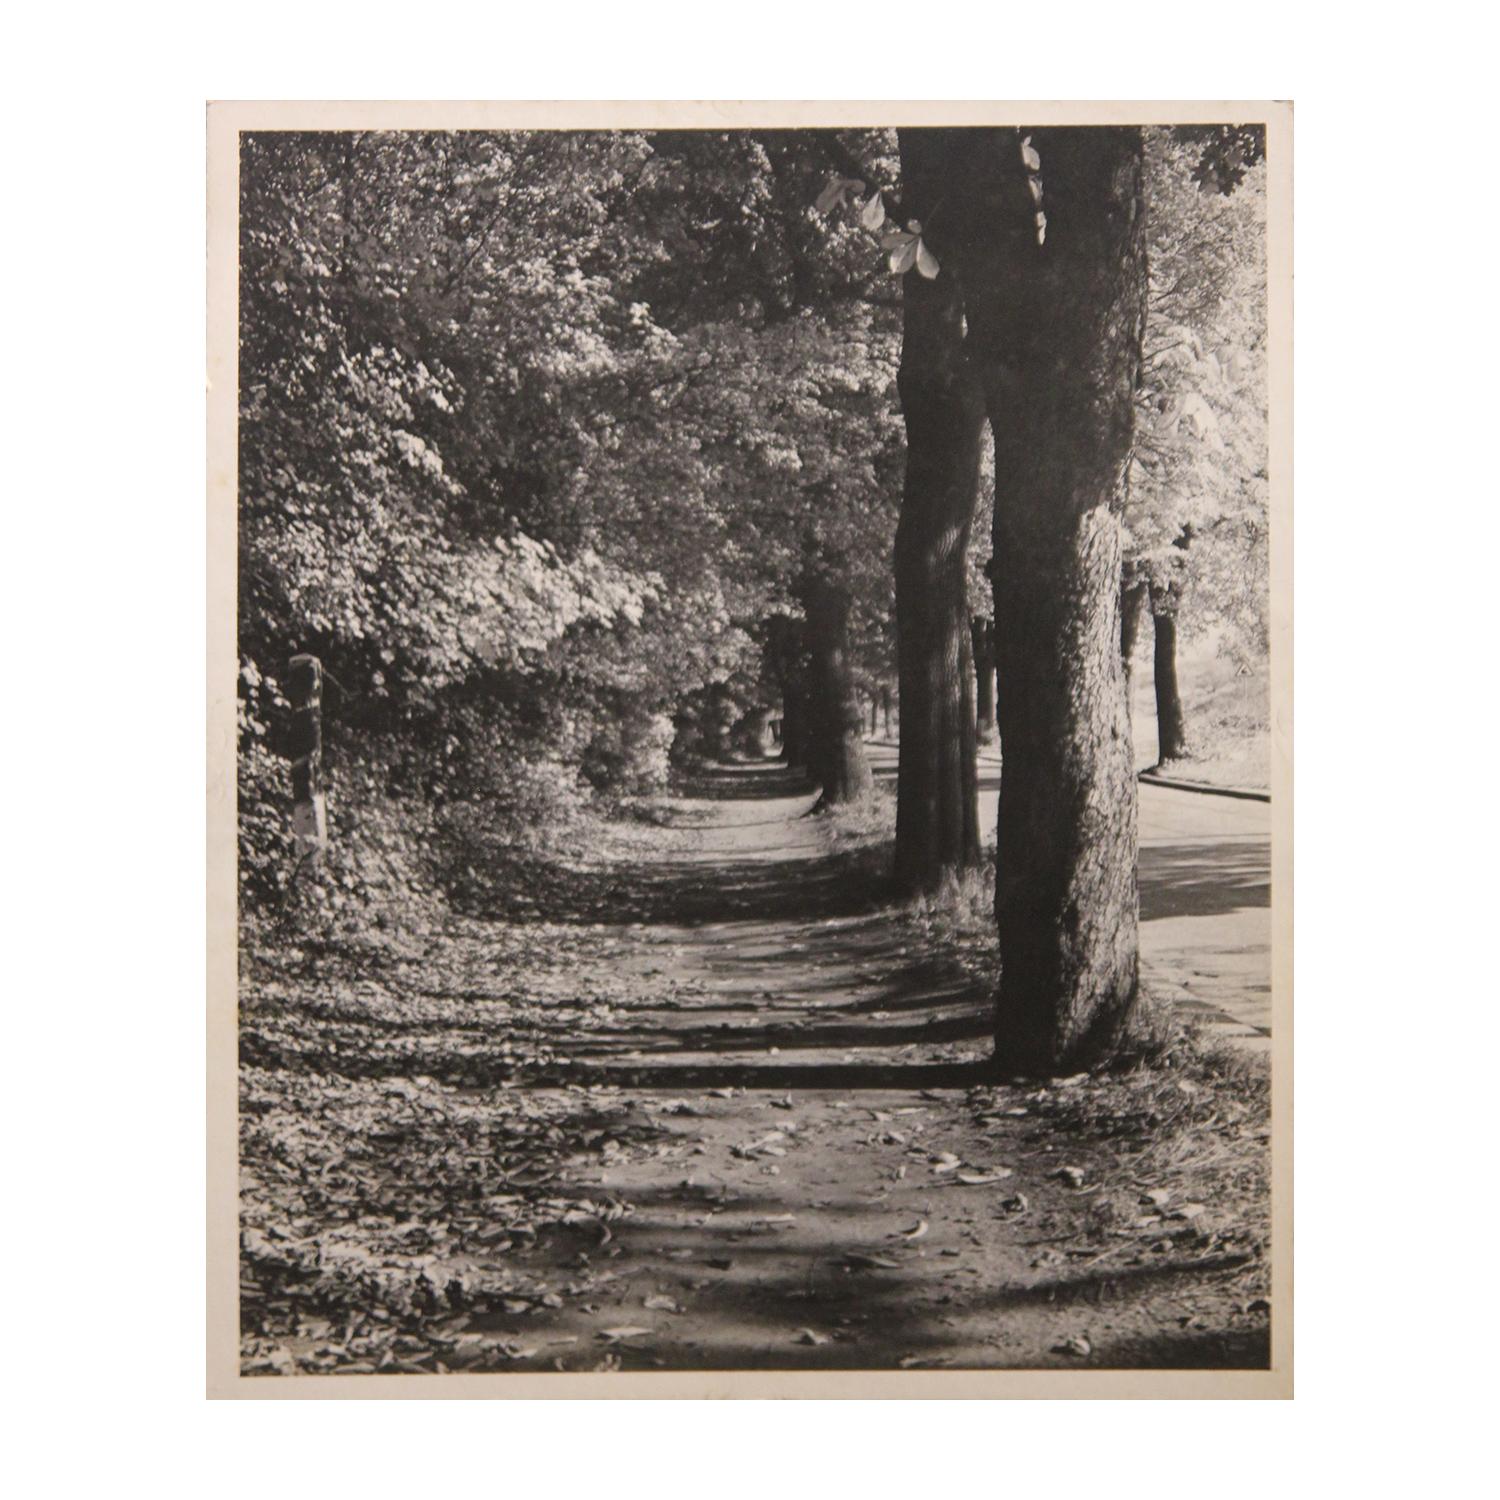 Schwarz-Weiß-Perspektive-Fotografie eines Sidewalks mit Bäumen